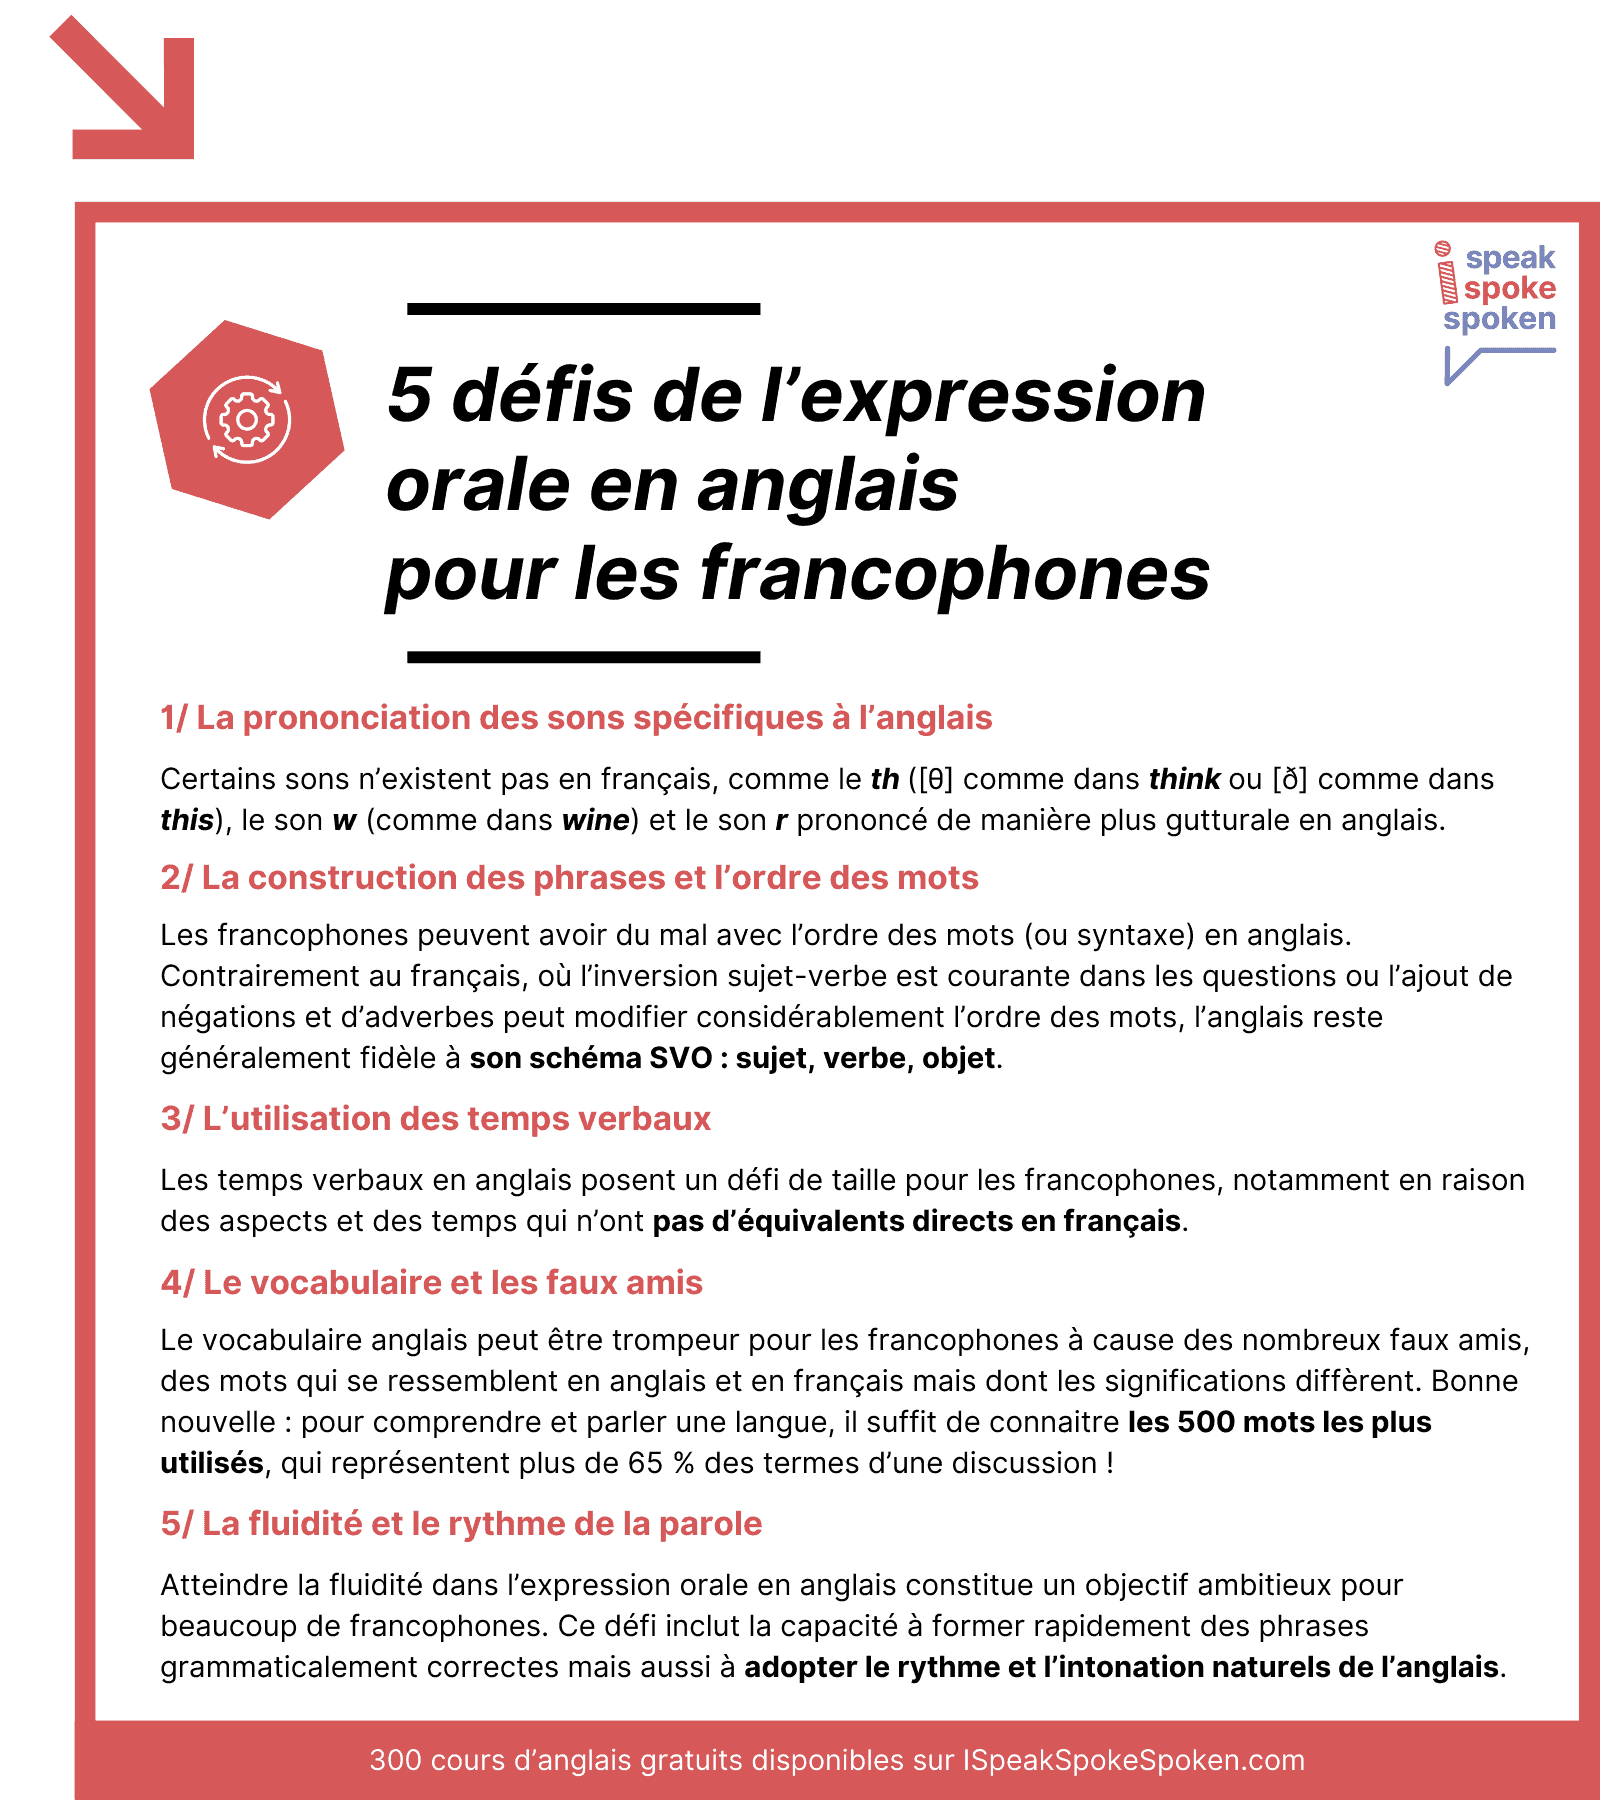 Les 5 défis de l’expression orale en anglais pour les francophones